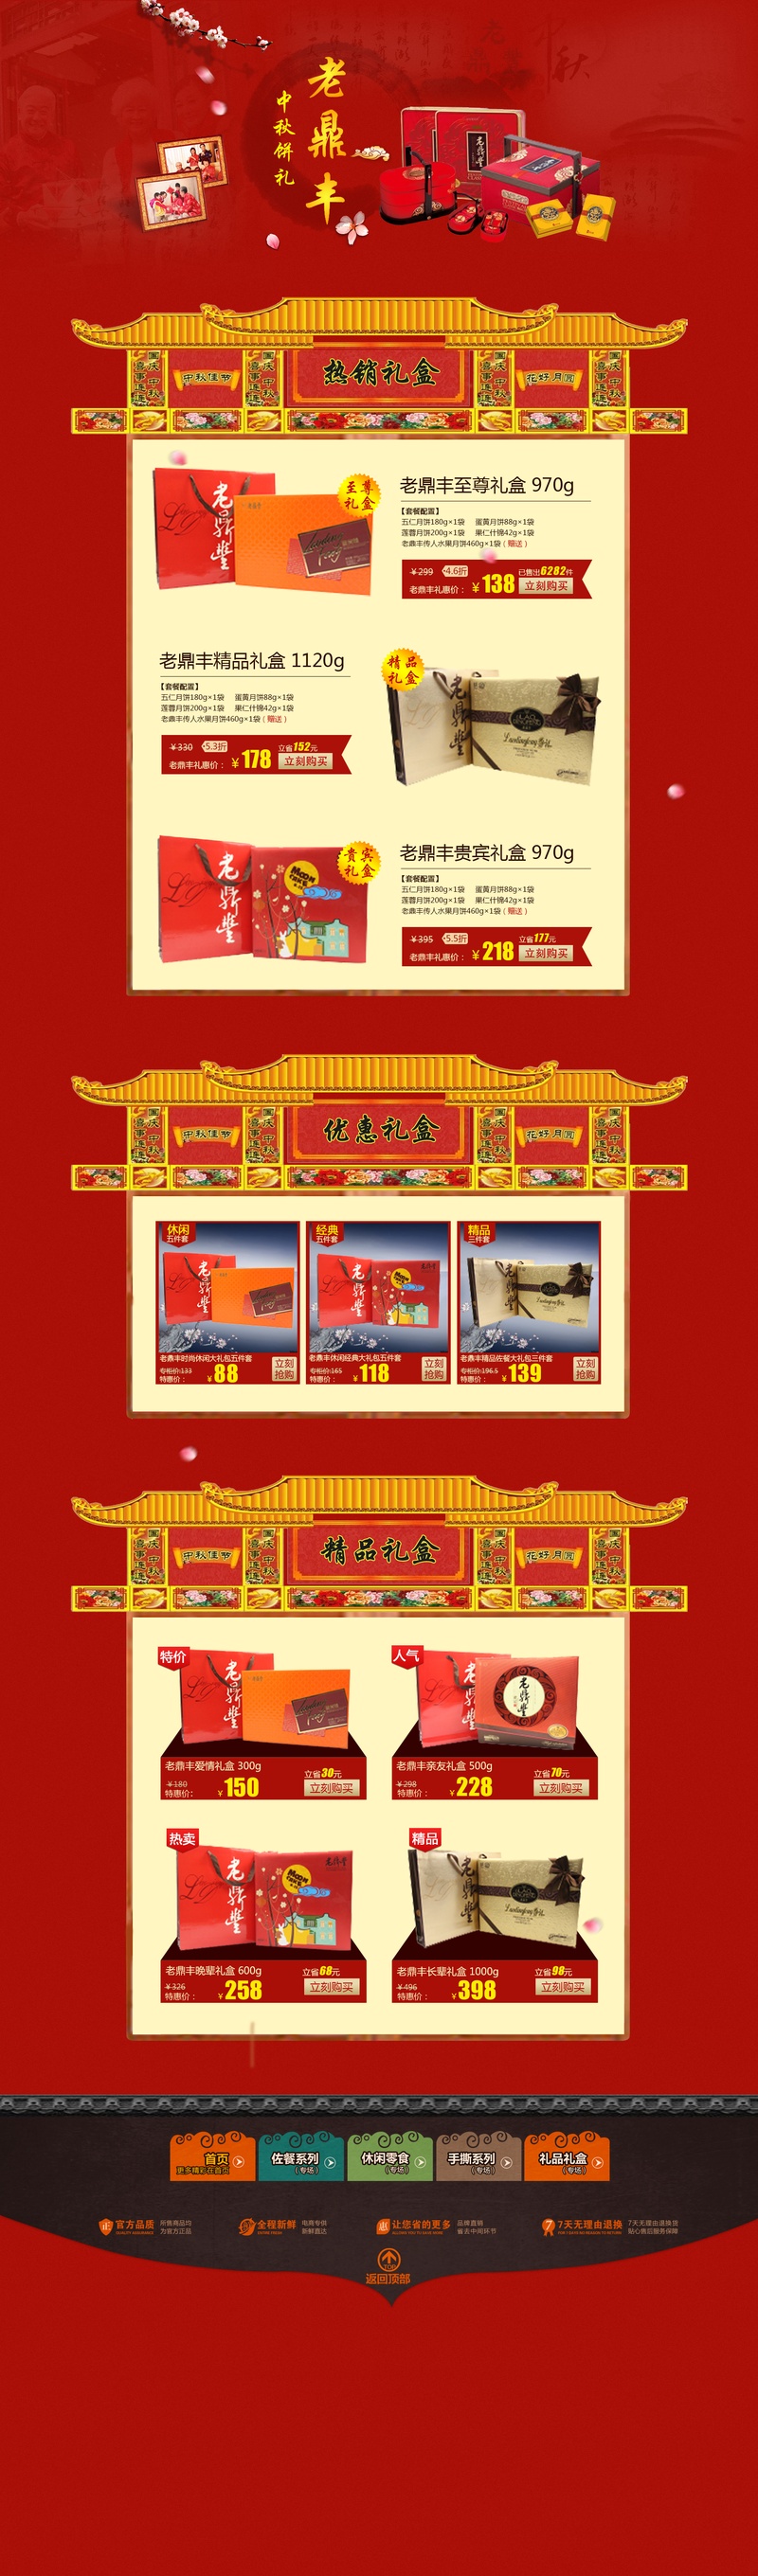 中国风天猫淘宝节日礼盒专题页面psd模板